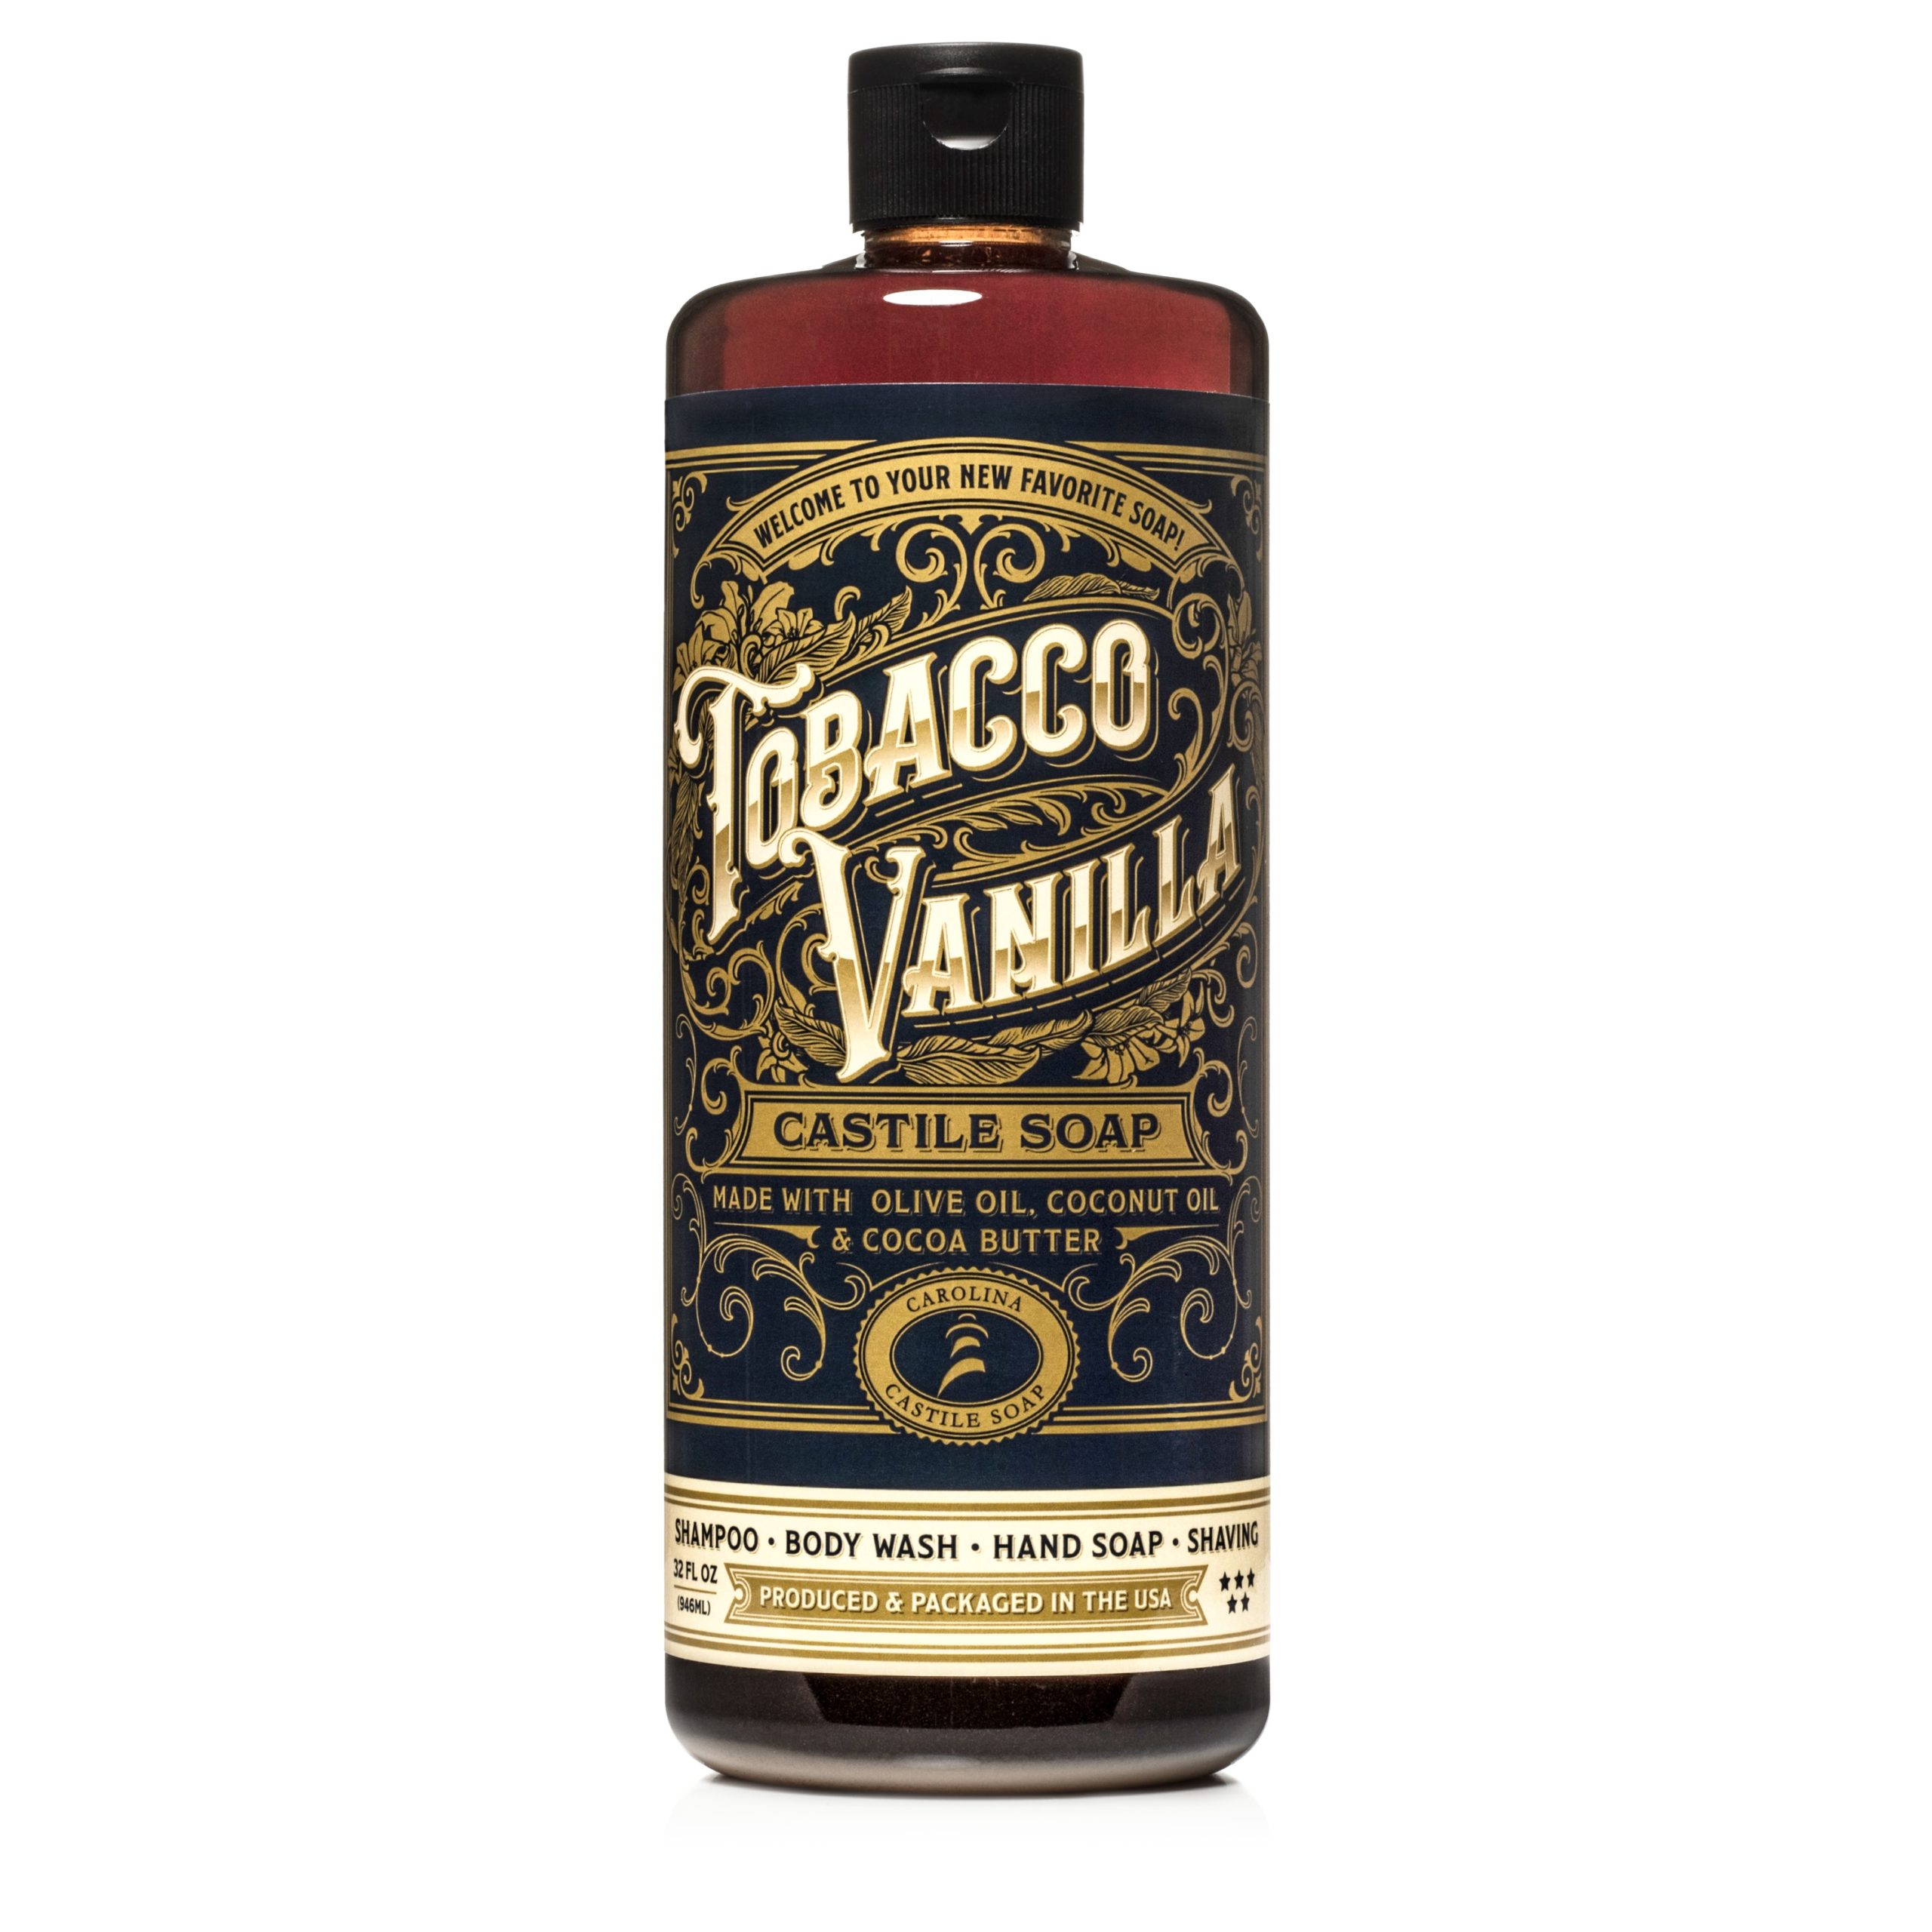 Tobacco Vanilla Castile Soap Liquid